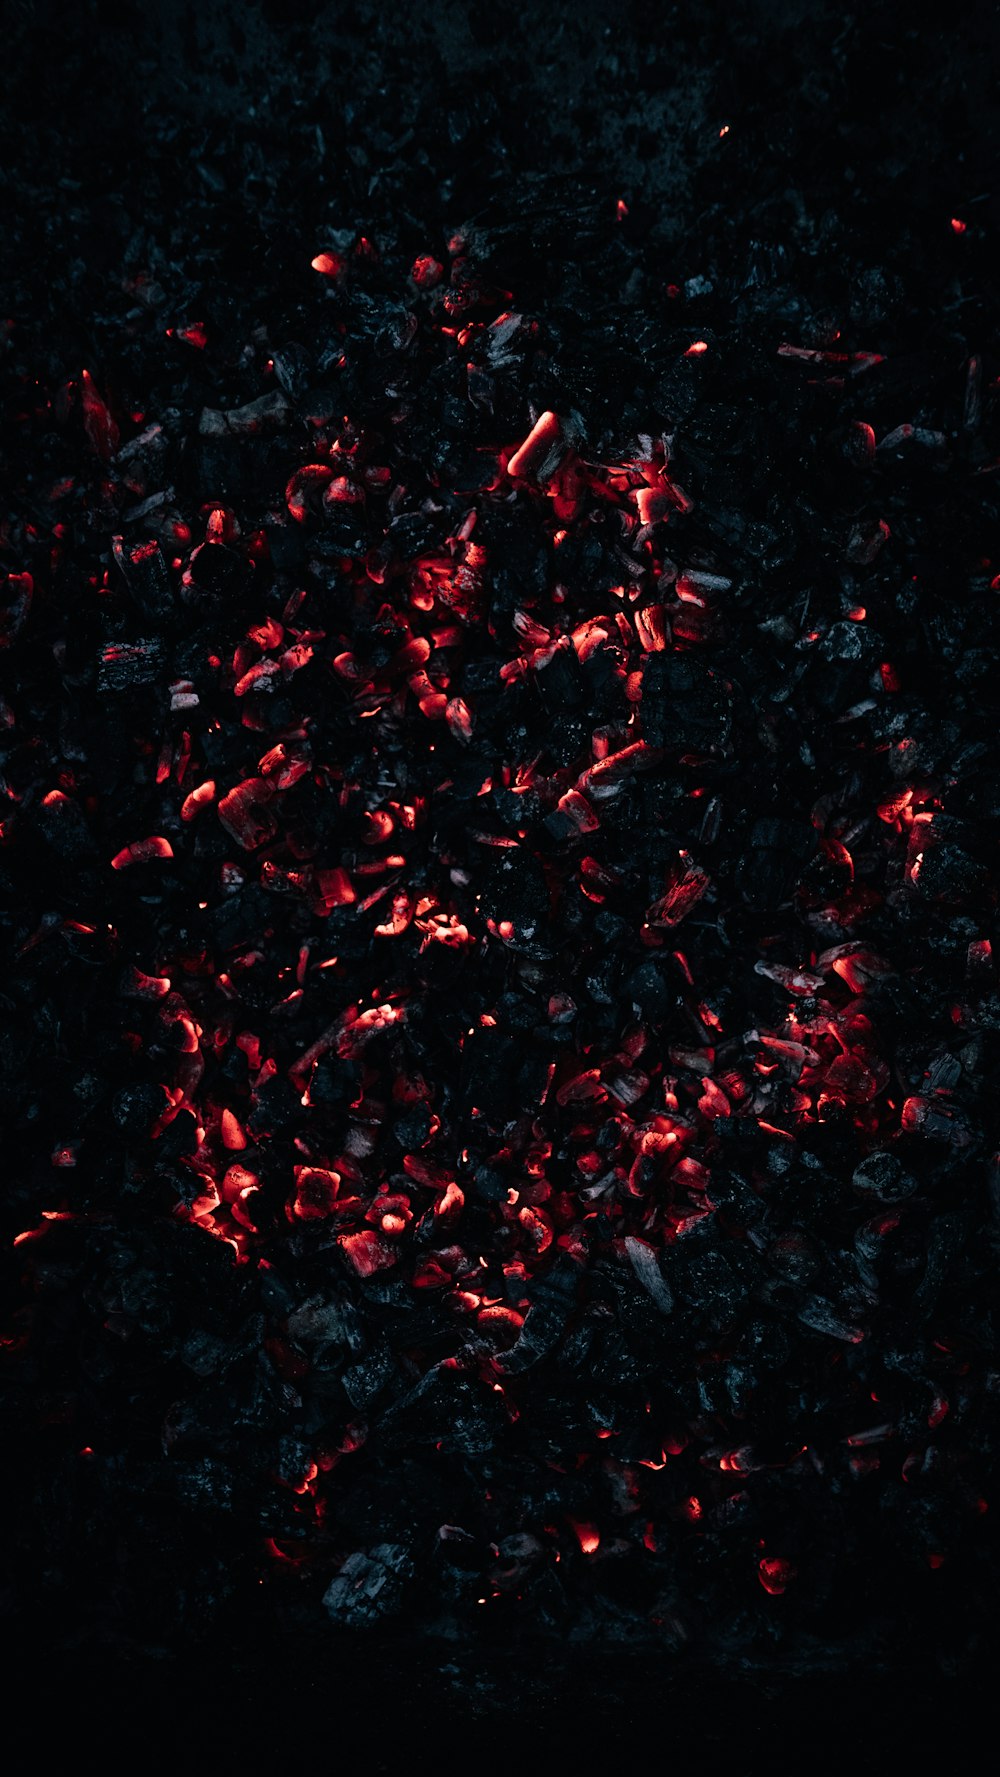 eine nahaufnahme eines schwarzen hintergrunds mit roten lichtern